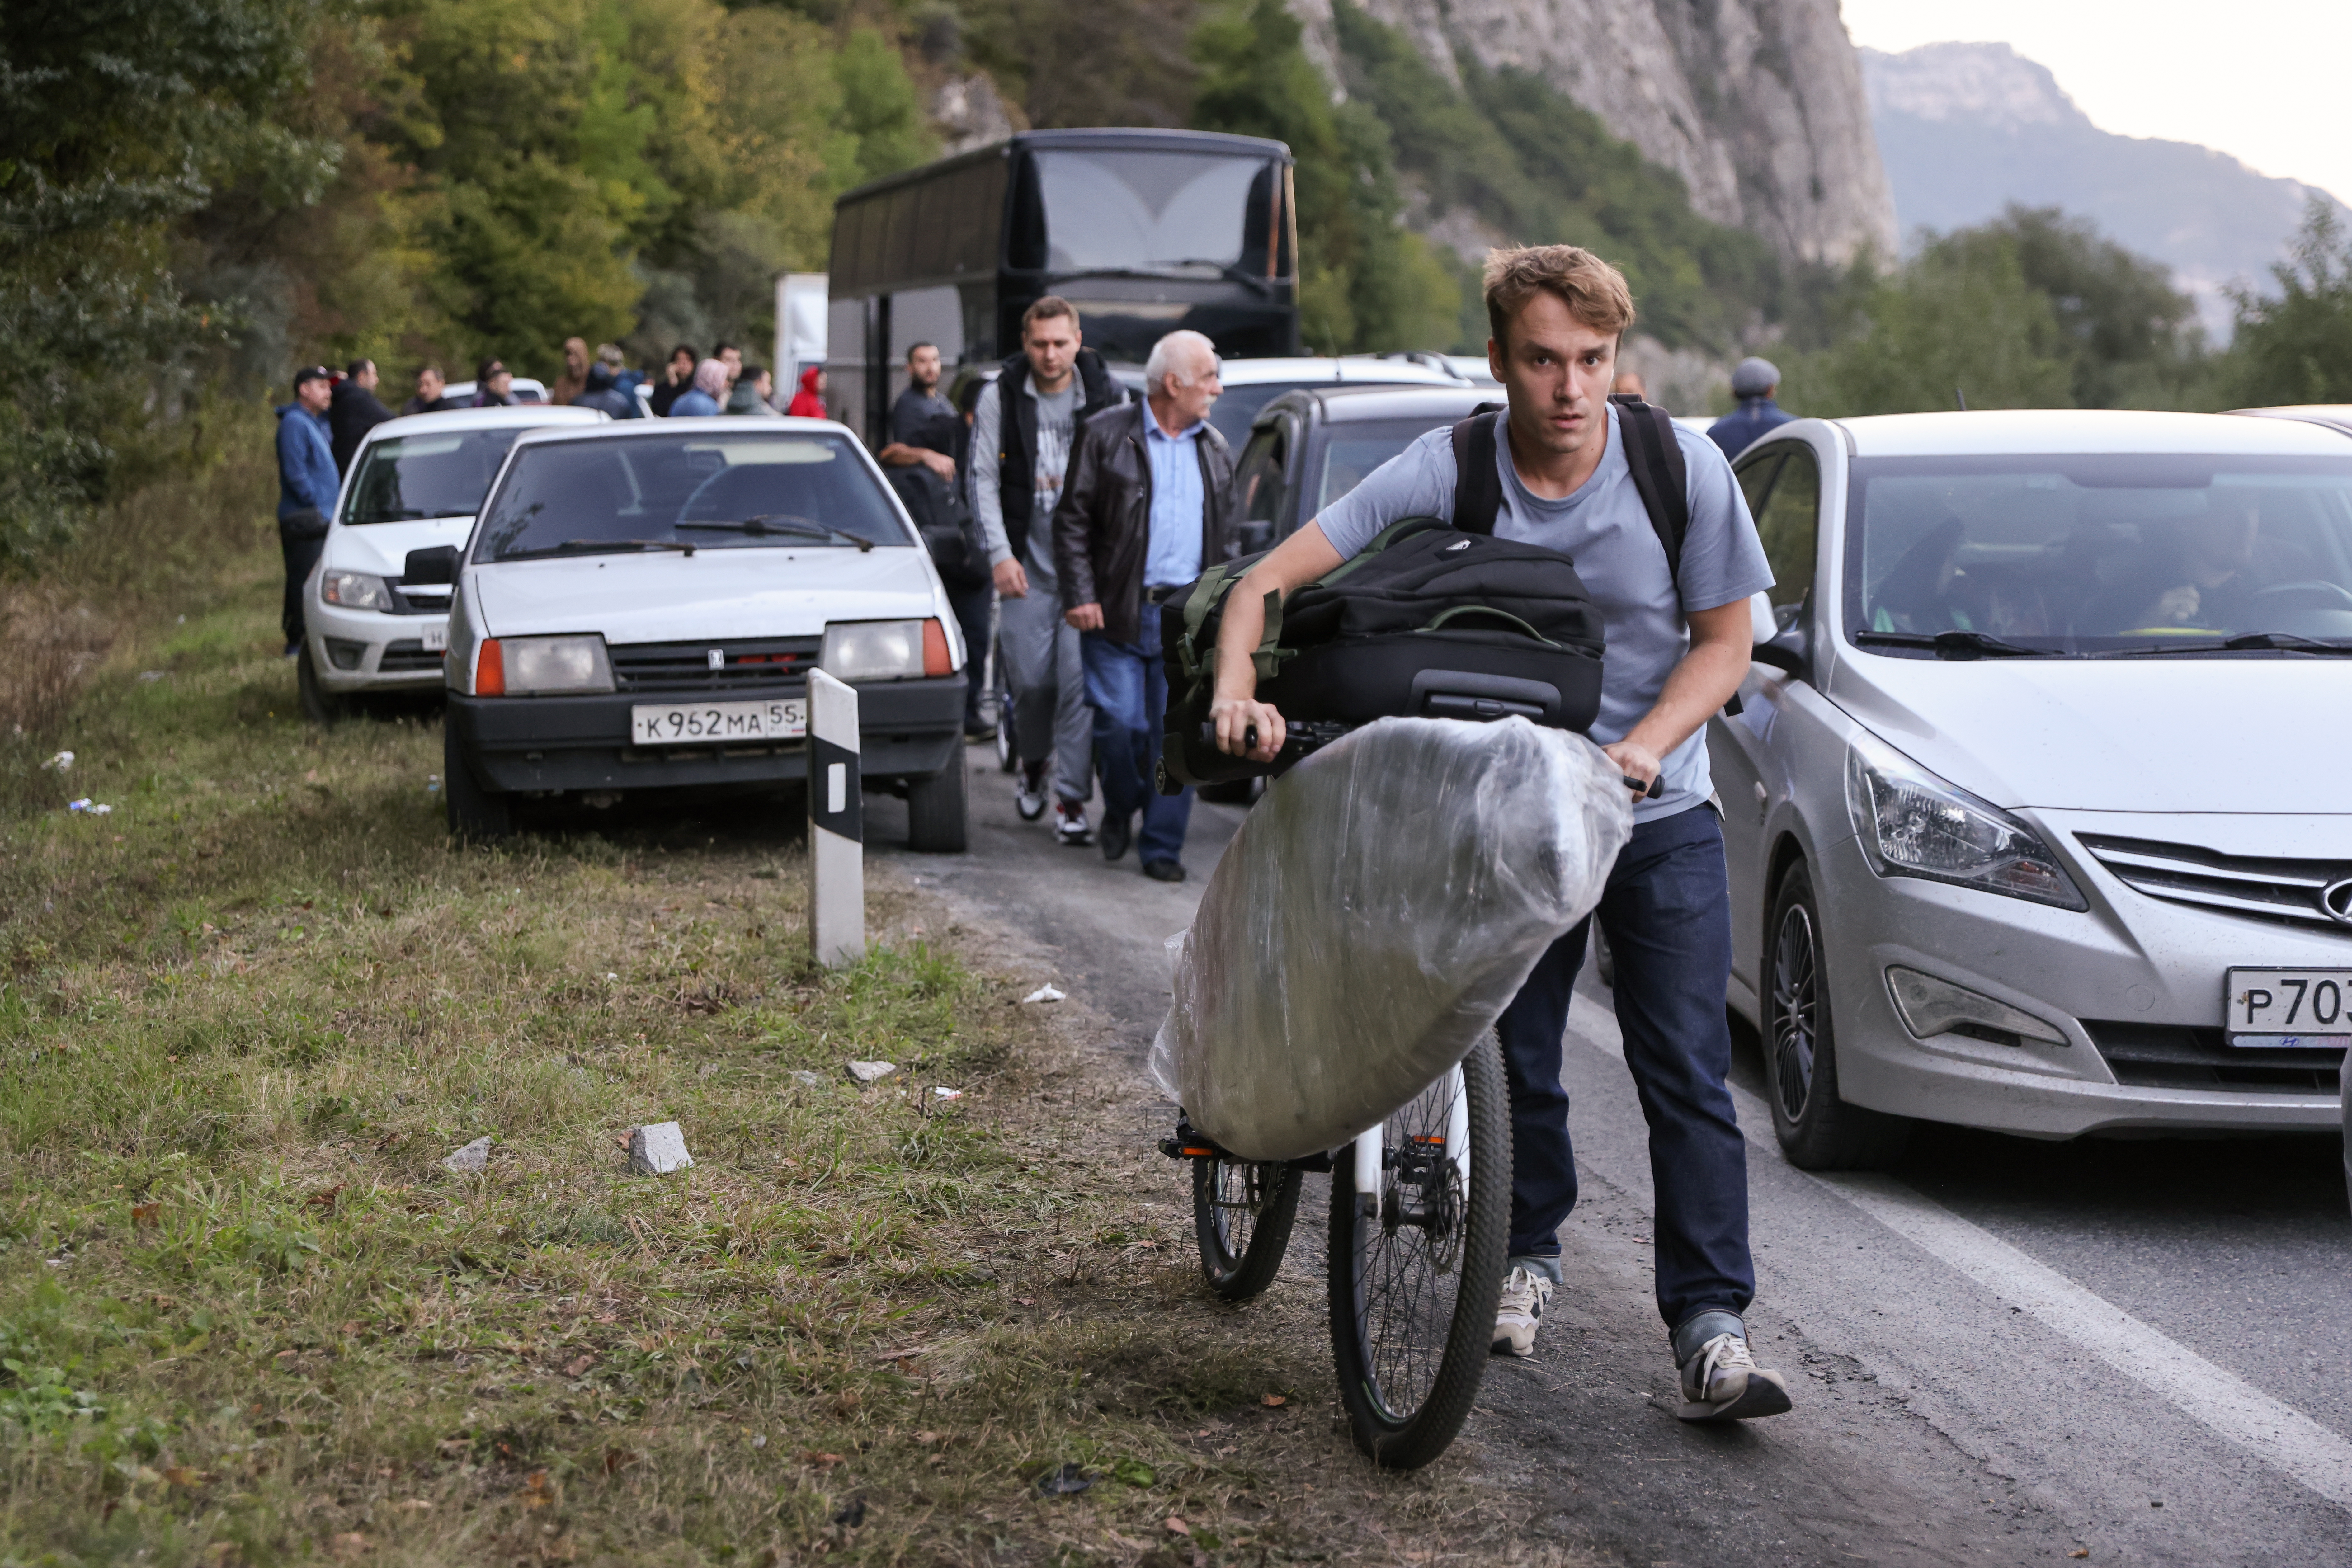 지난 9월 26일 러시아-조지아를 잇는 국경 검문소에서 차량과 자전거, 도보로 이동한 러시아 사람들이 검문소를 통과하기 위해 길게 줄을 선 모습. 이 곳에만 차량 3천5백대가 줄을 섰다. (사진/타스, 연합뉴스)